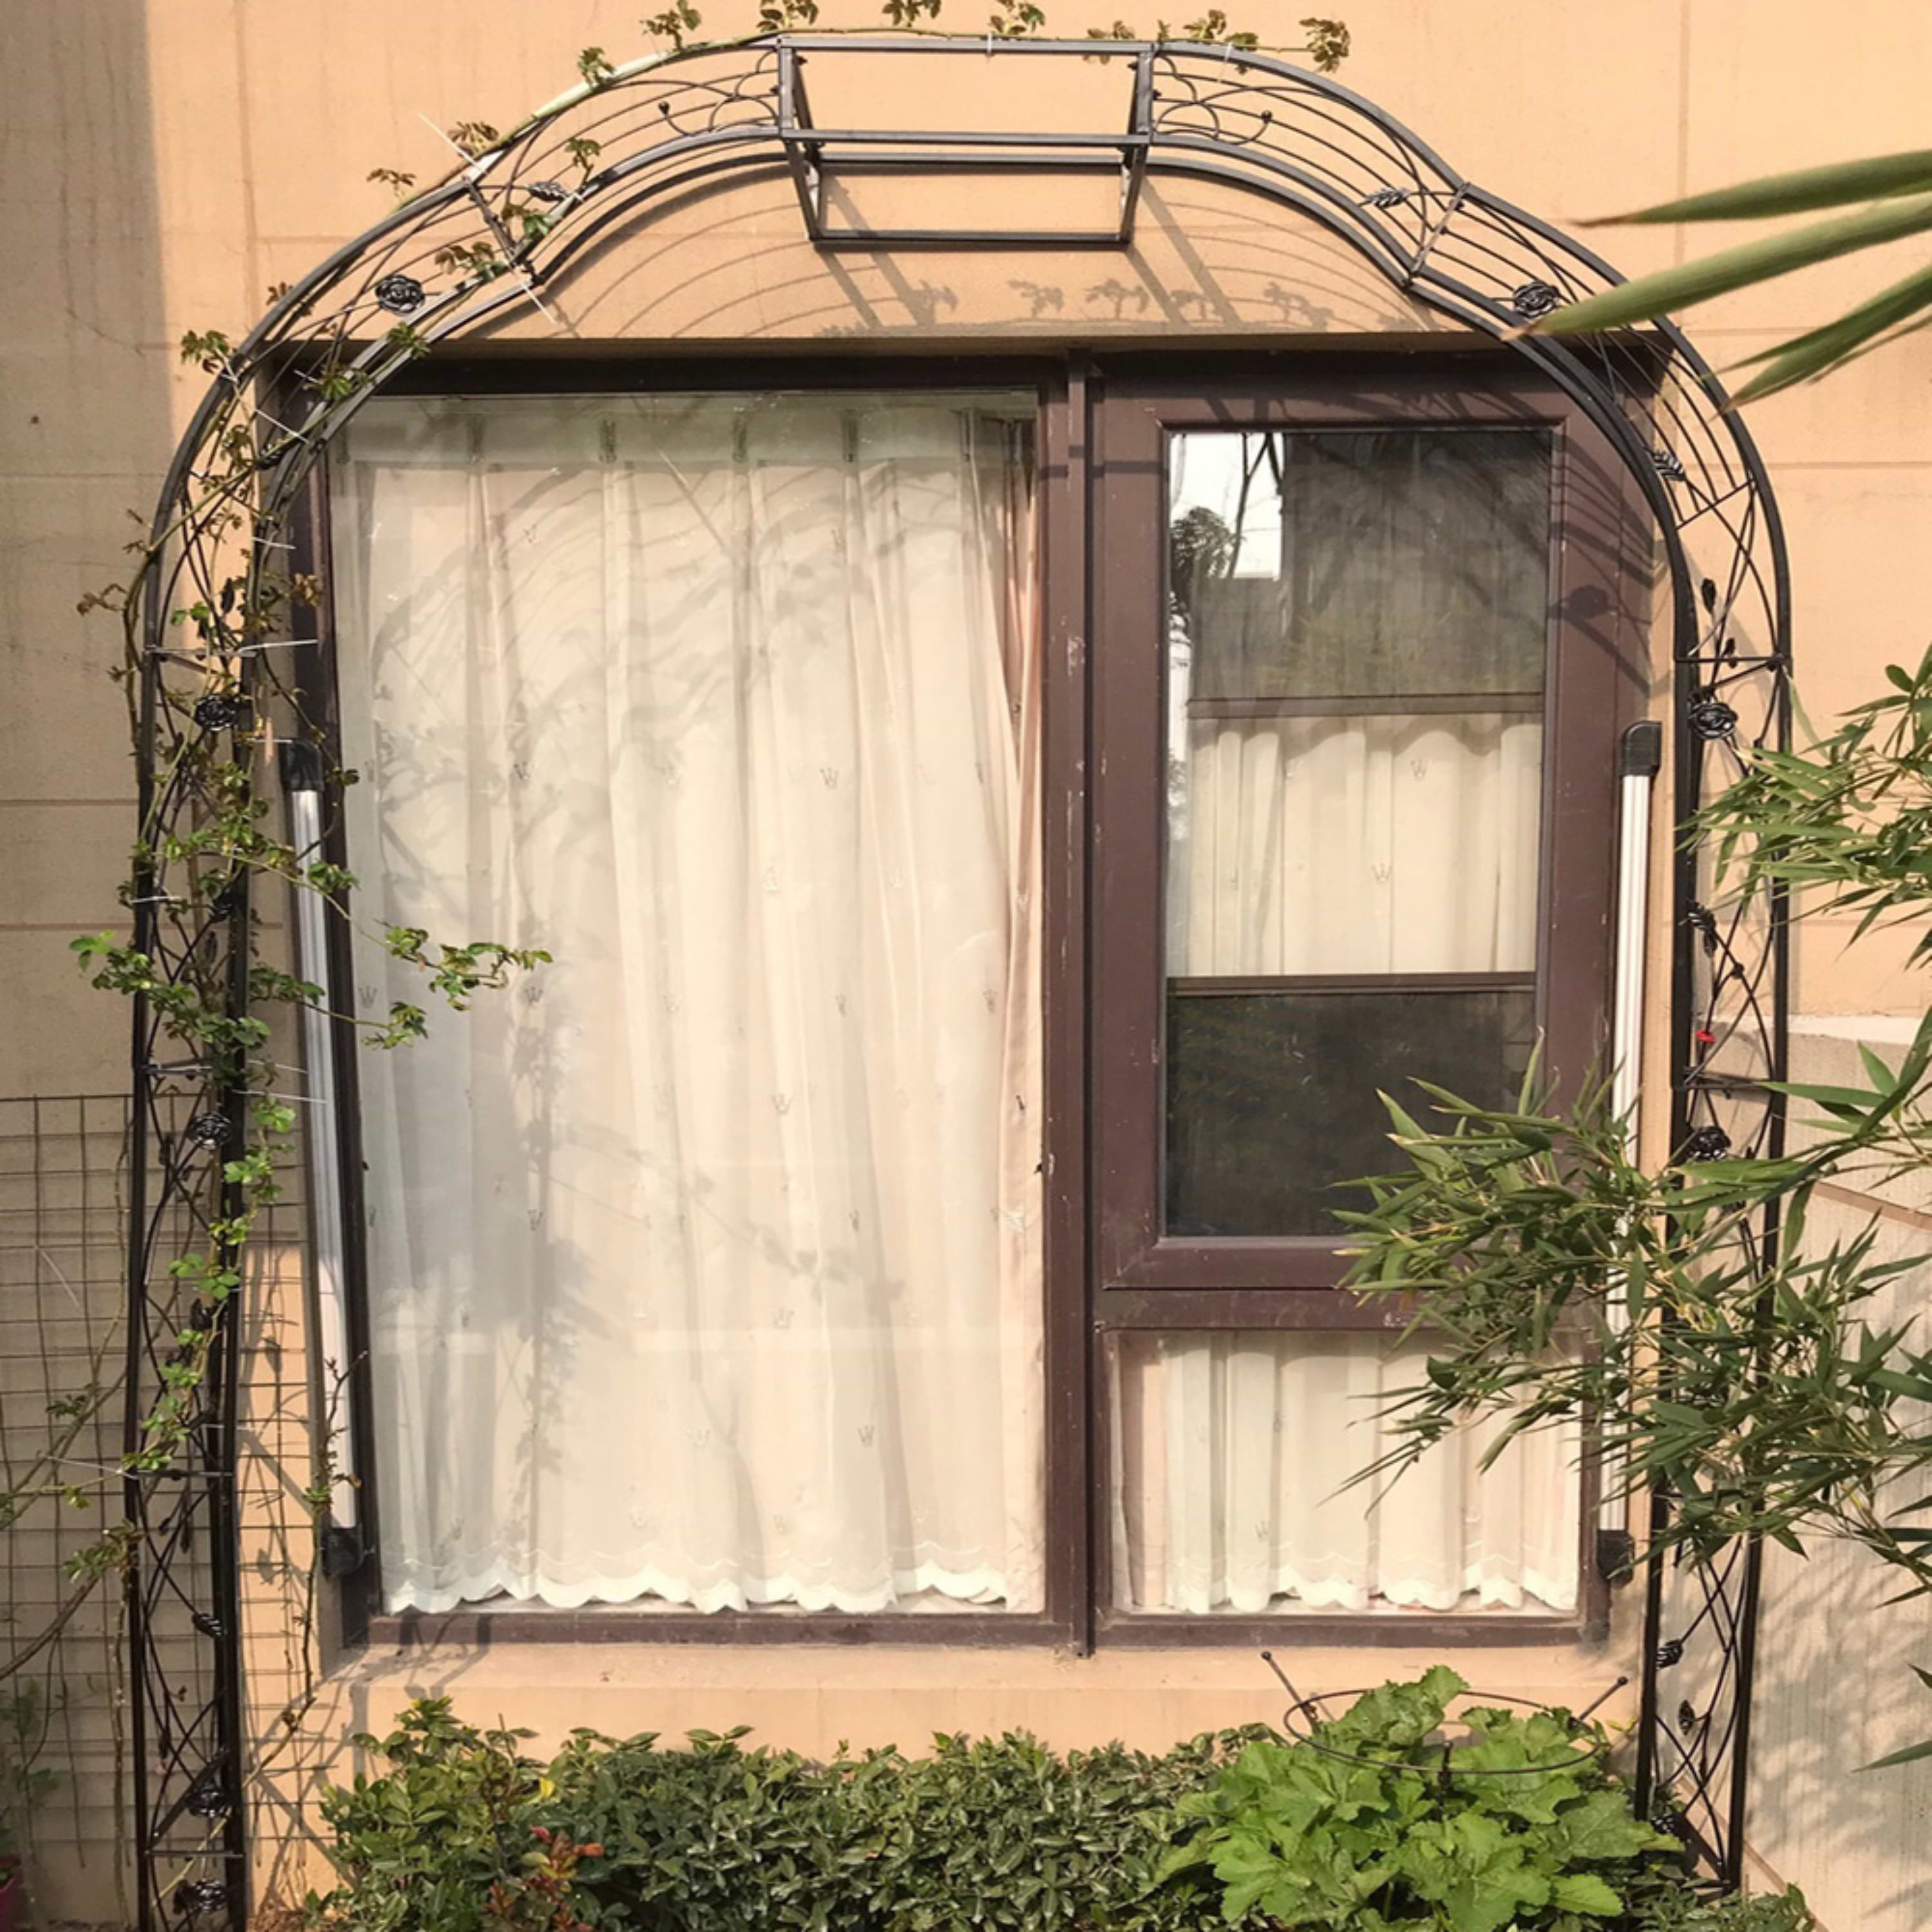 קשת לצמחים מטפסים בגינה - שער כניסה ממתכת ברוחב 190 ס